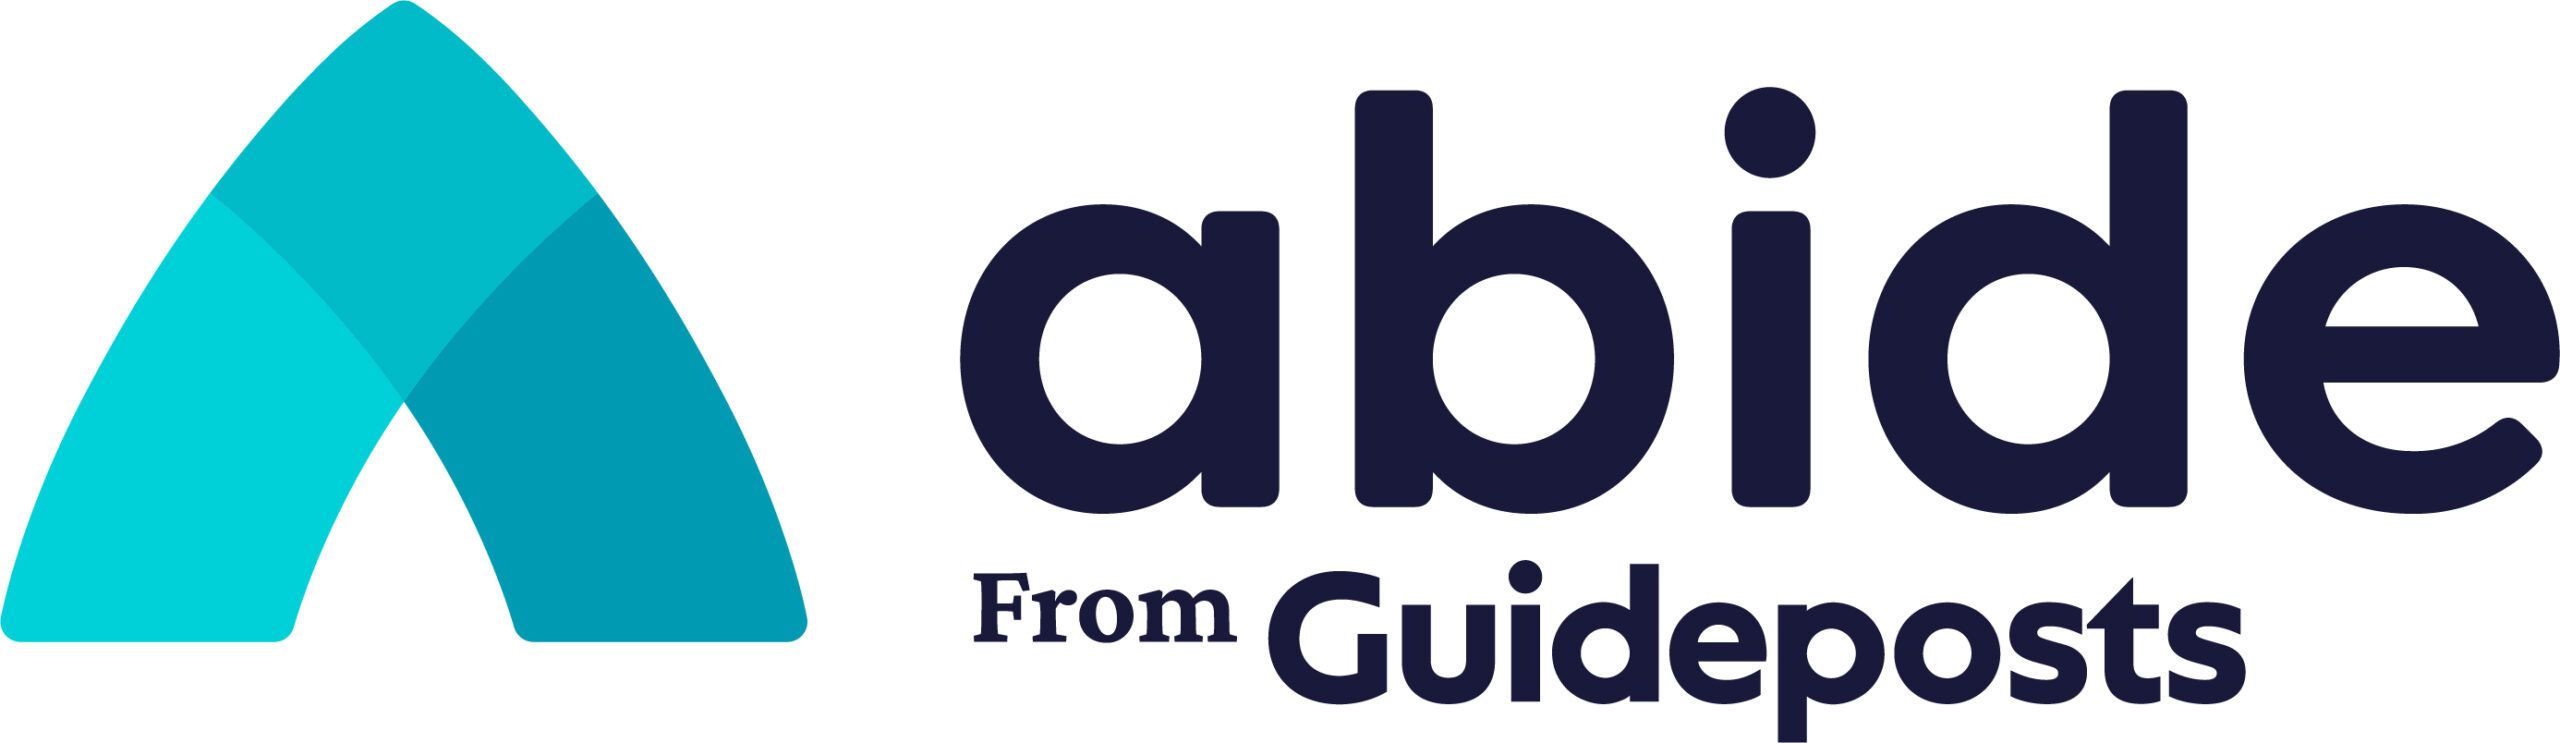 ABI0002_Abide_logo_AW_RGB